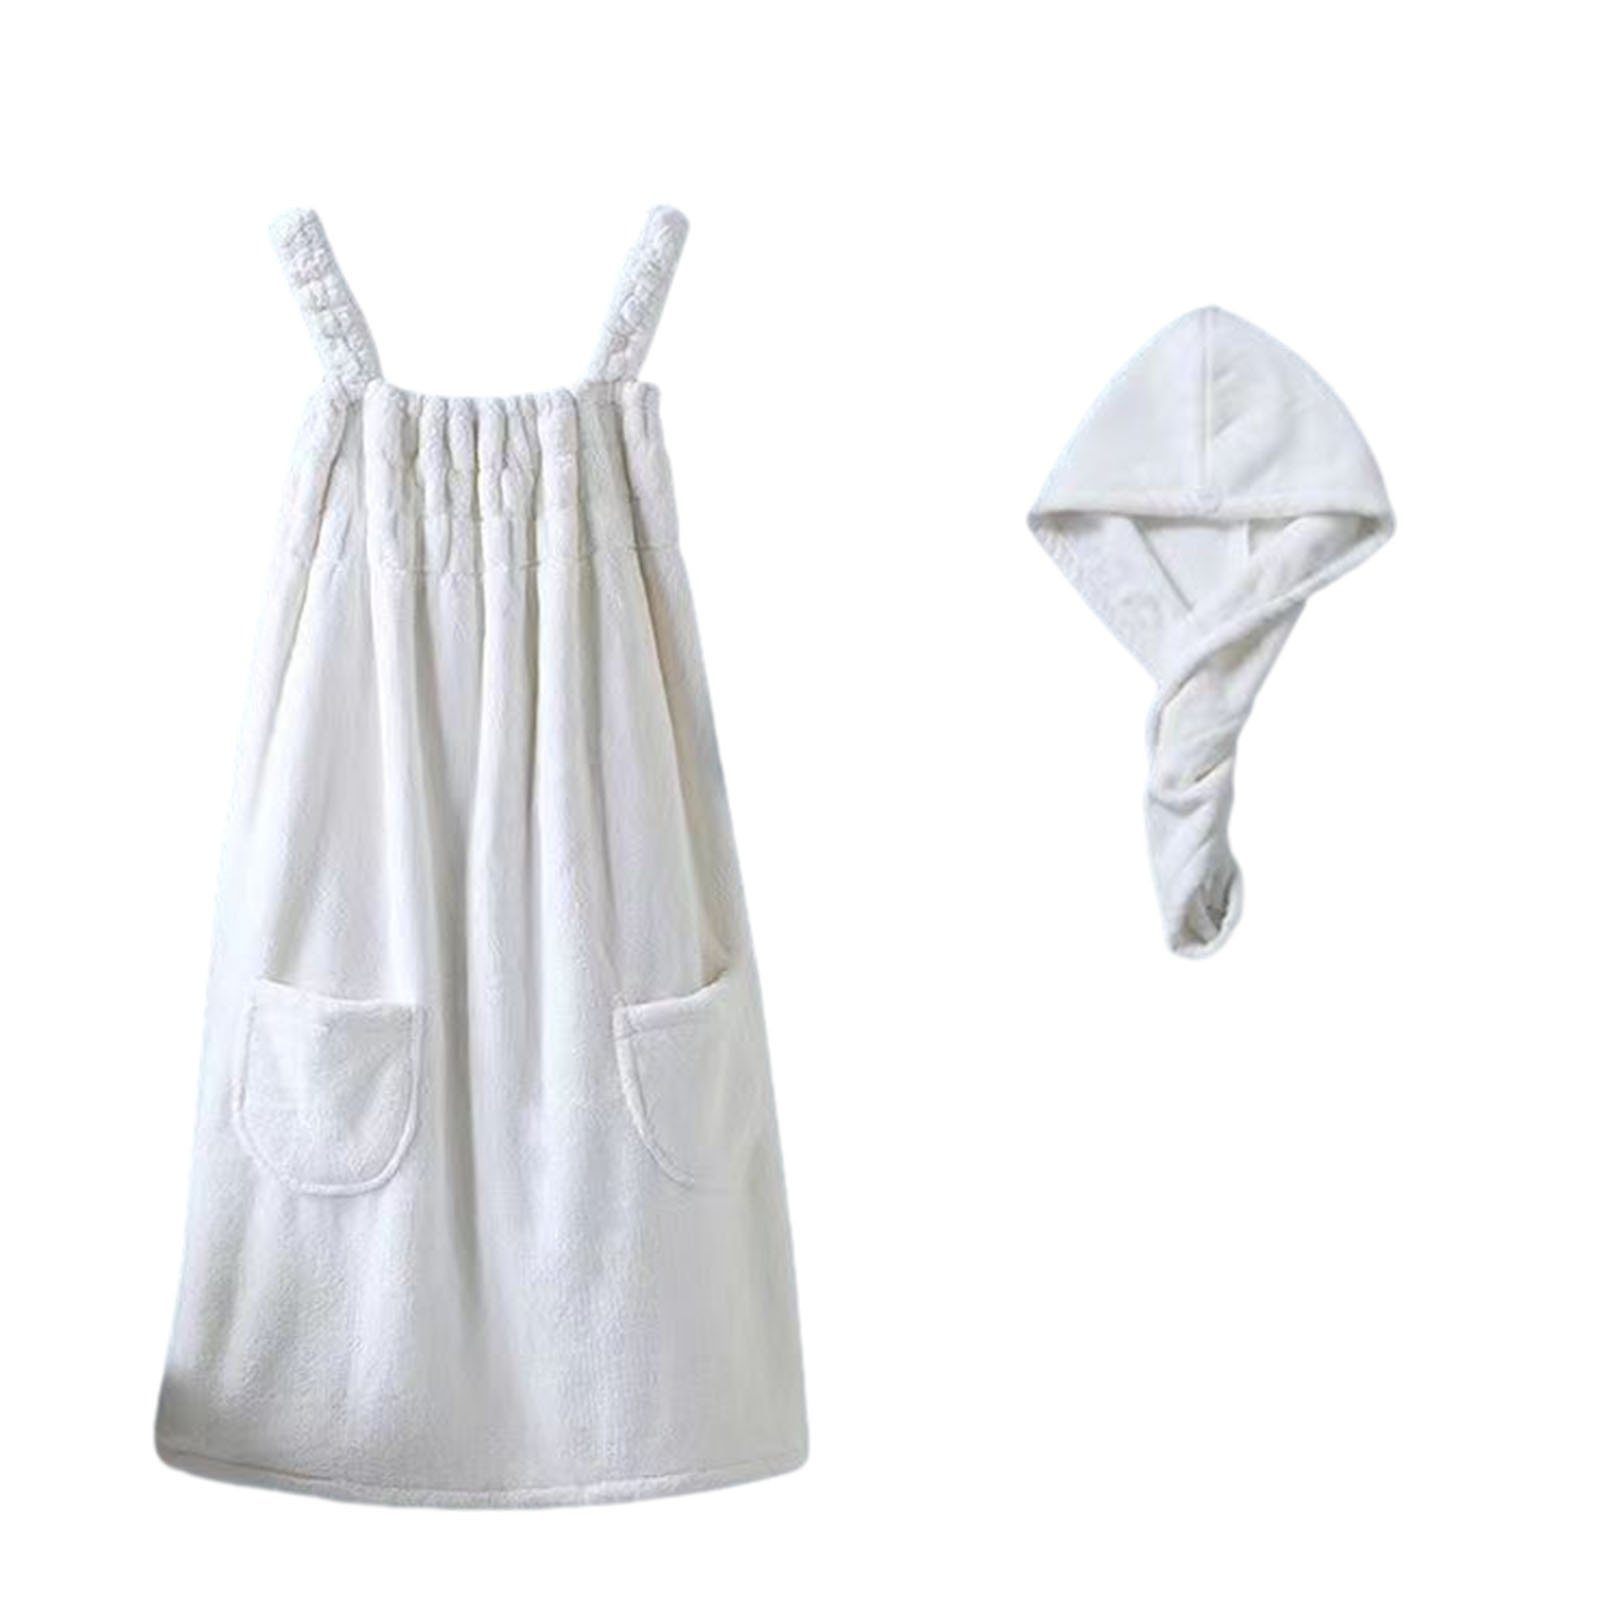 Blusmart Bademantel Schöner Sling-Baderock-Pyjama Für Damen, Leichtes, Extra white skirt with cap